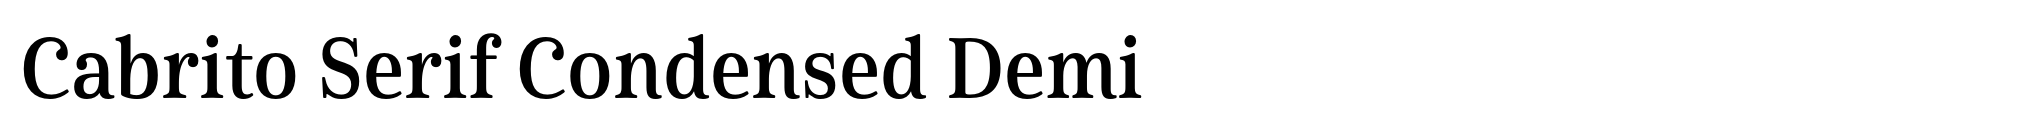 Cabrito Serif Condensed Demi image